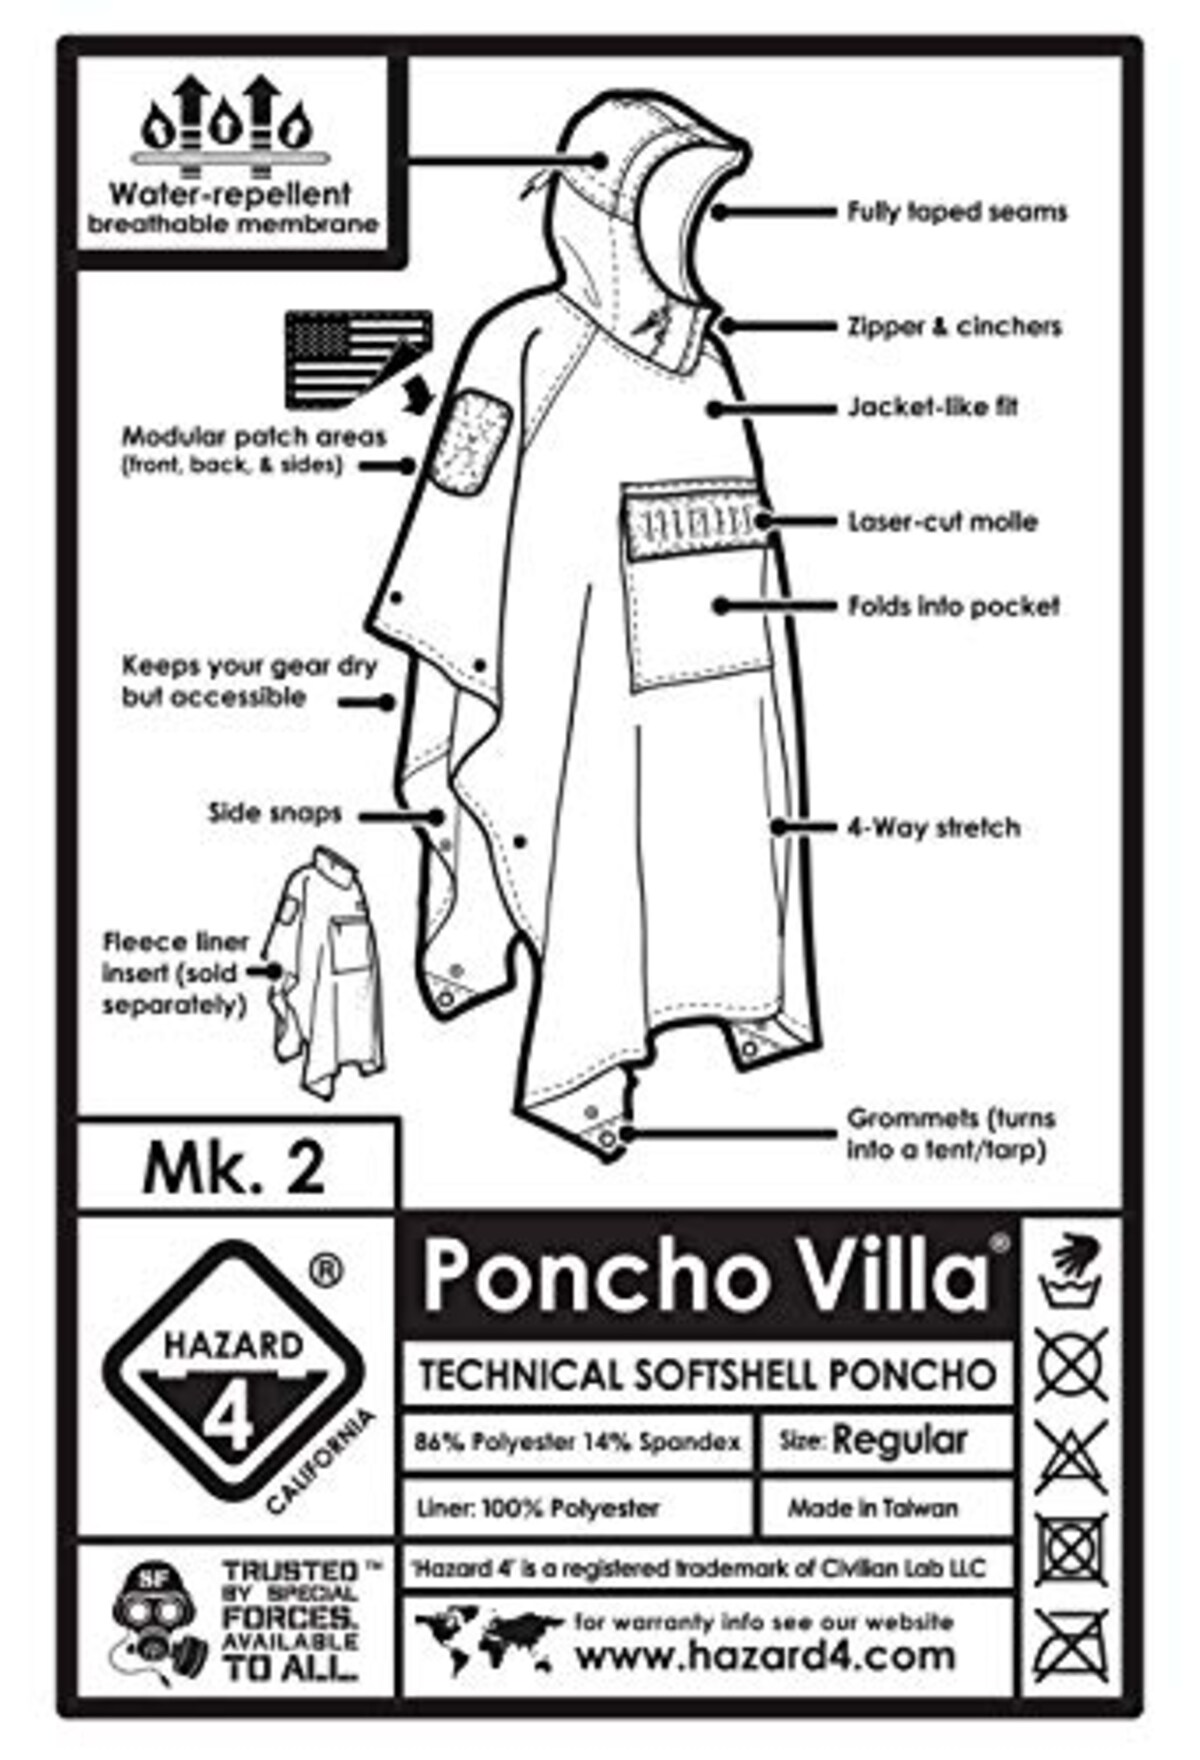  V. 2020 PonchoVilla Softshell Poncho OD Green画像5 